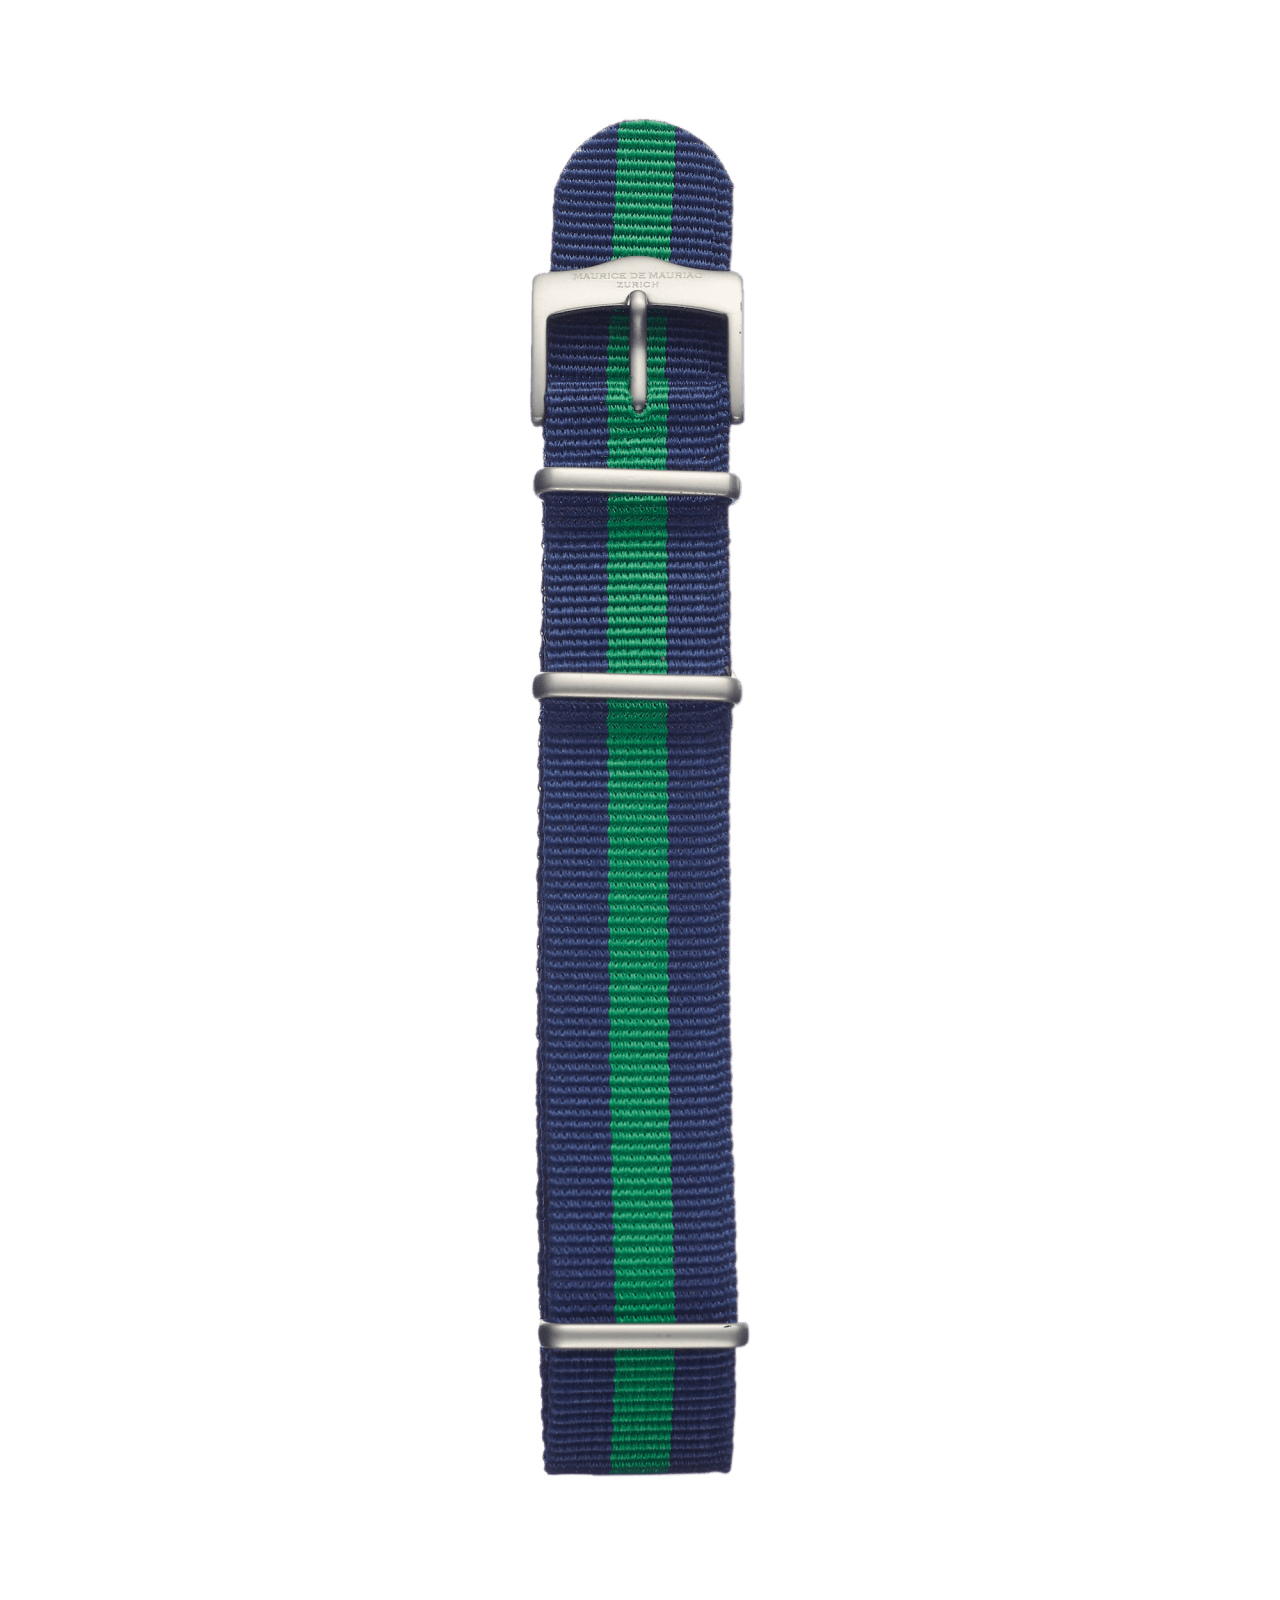 Textil Uhrenband mit gestreifter farbe